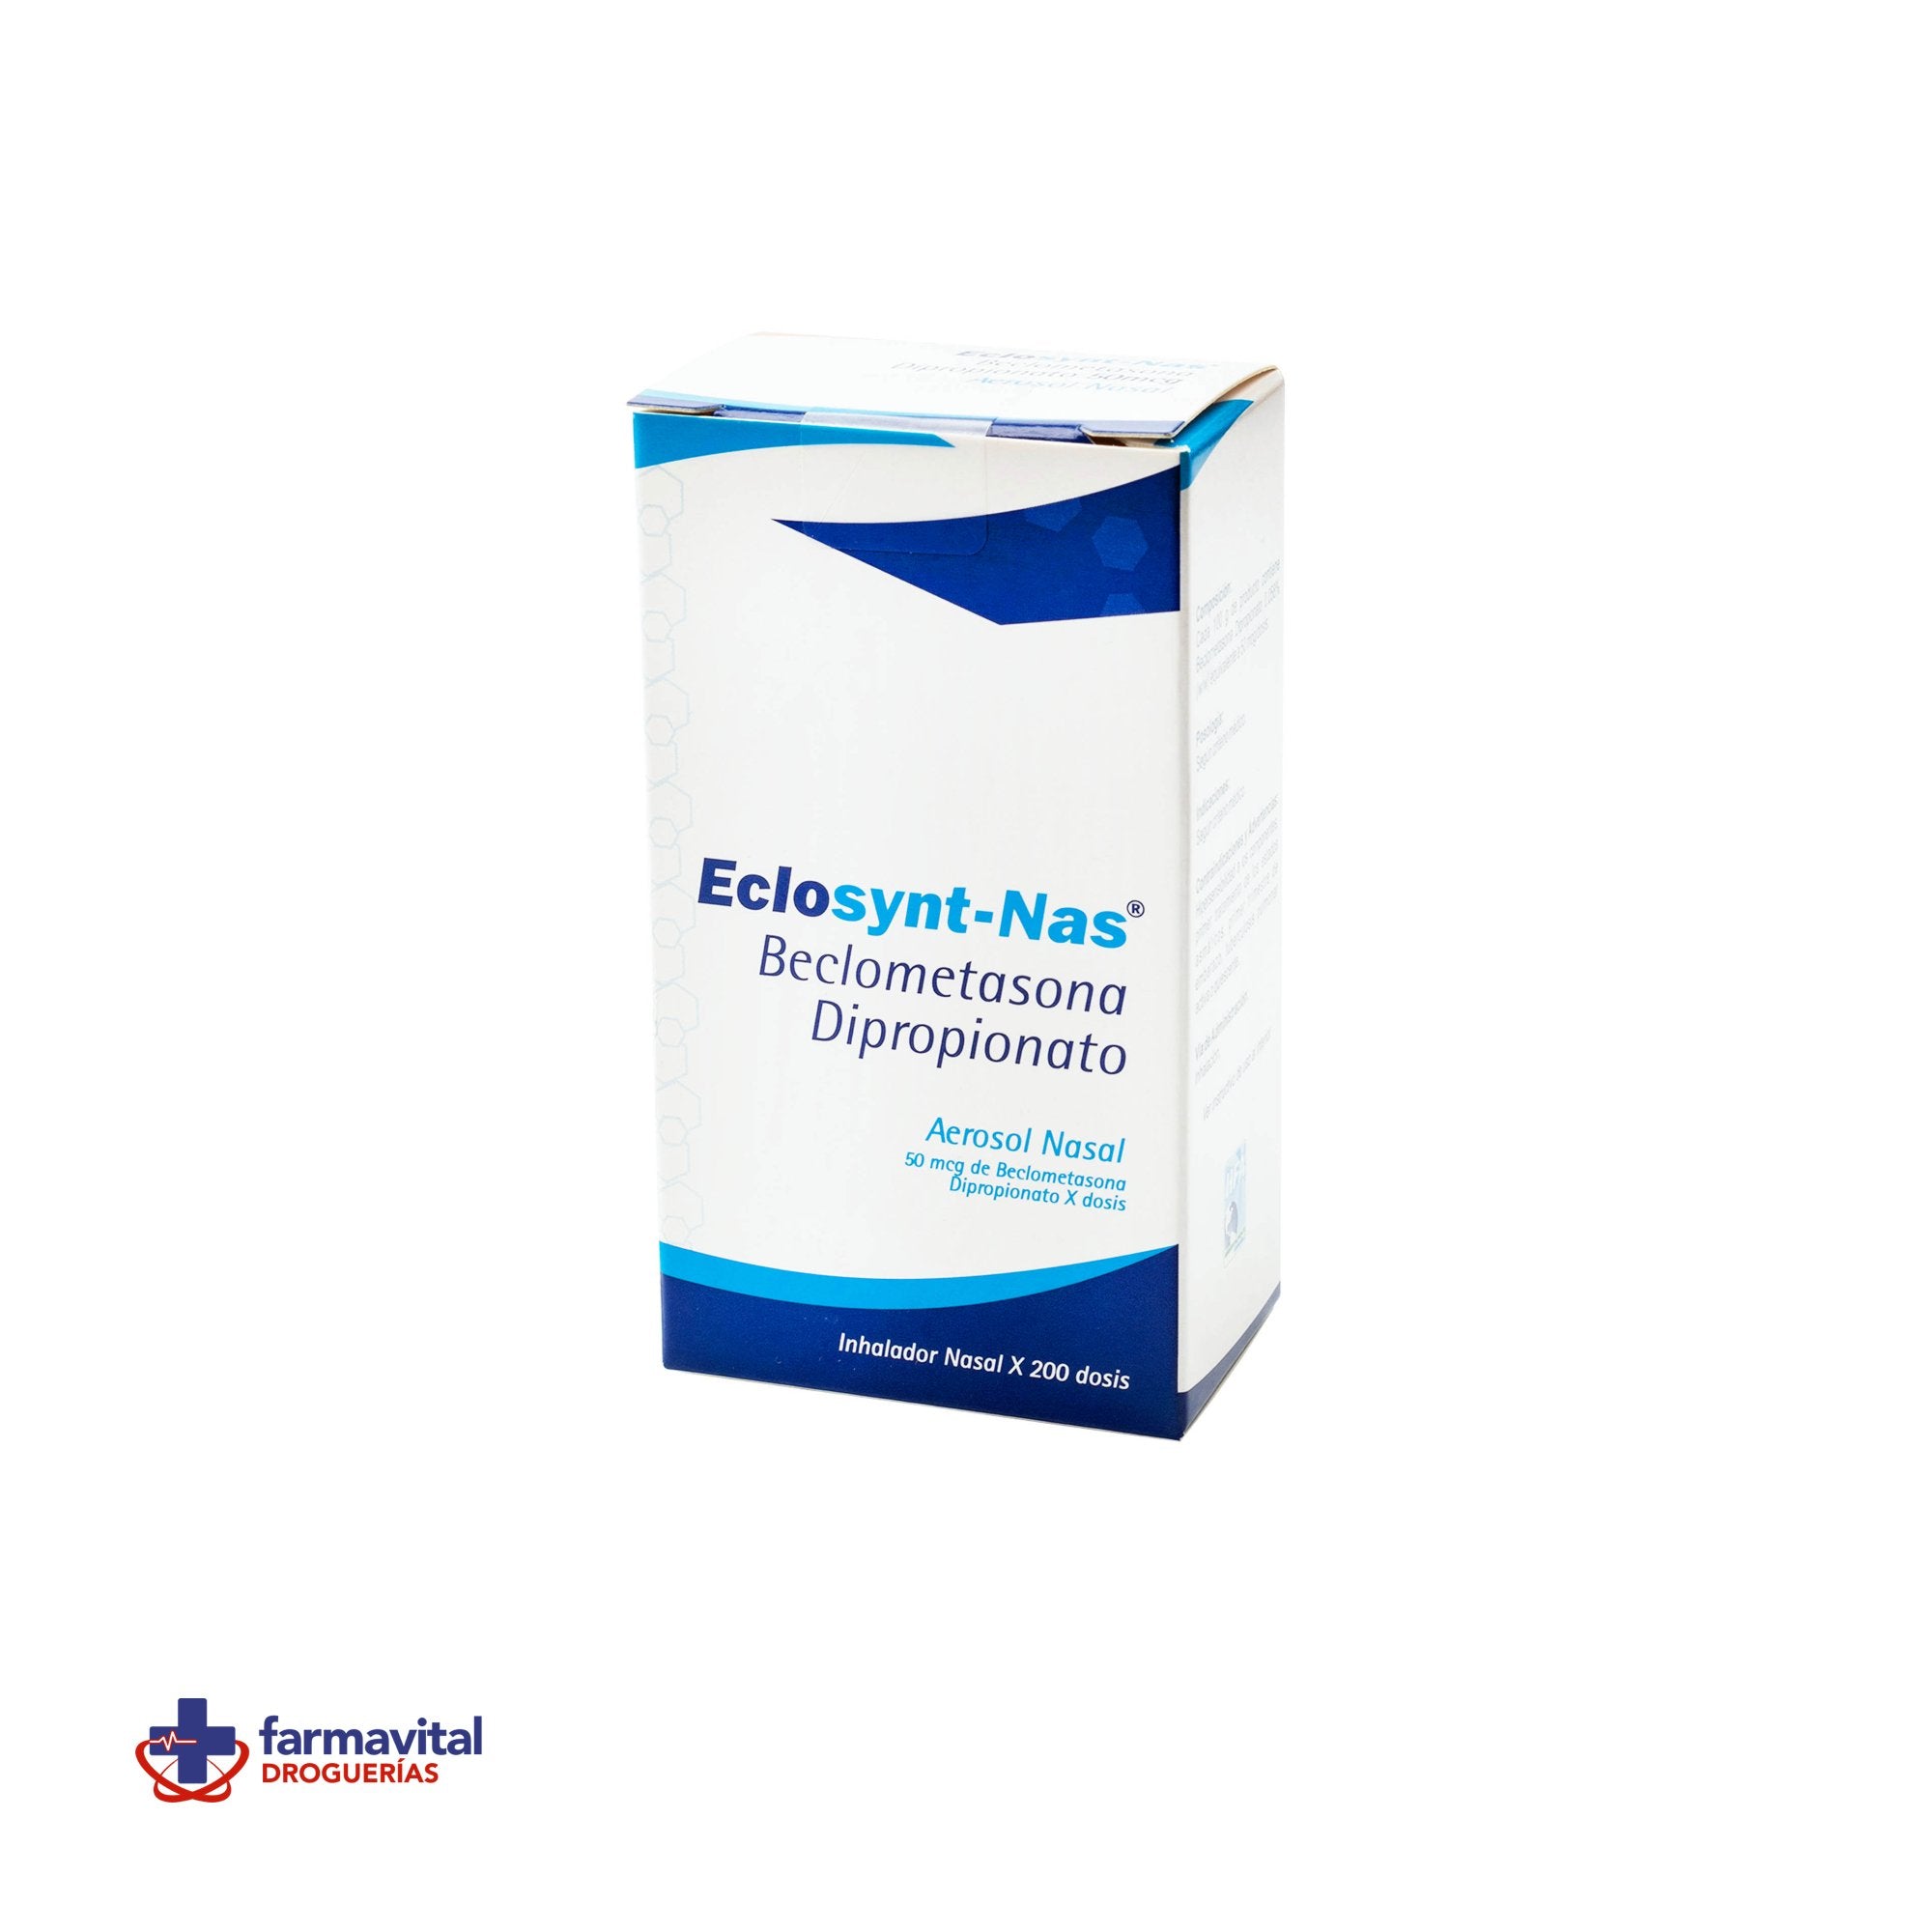 Eclosynt-Nas Beclometasona Dipropionato 50 mcg Faes Farma Inhalador x 200  dosis